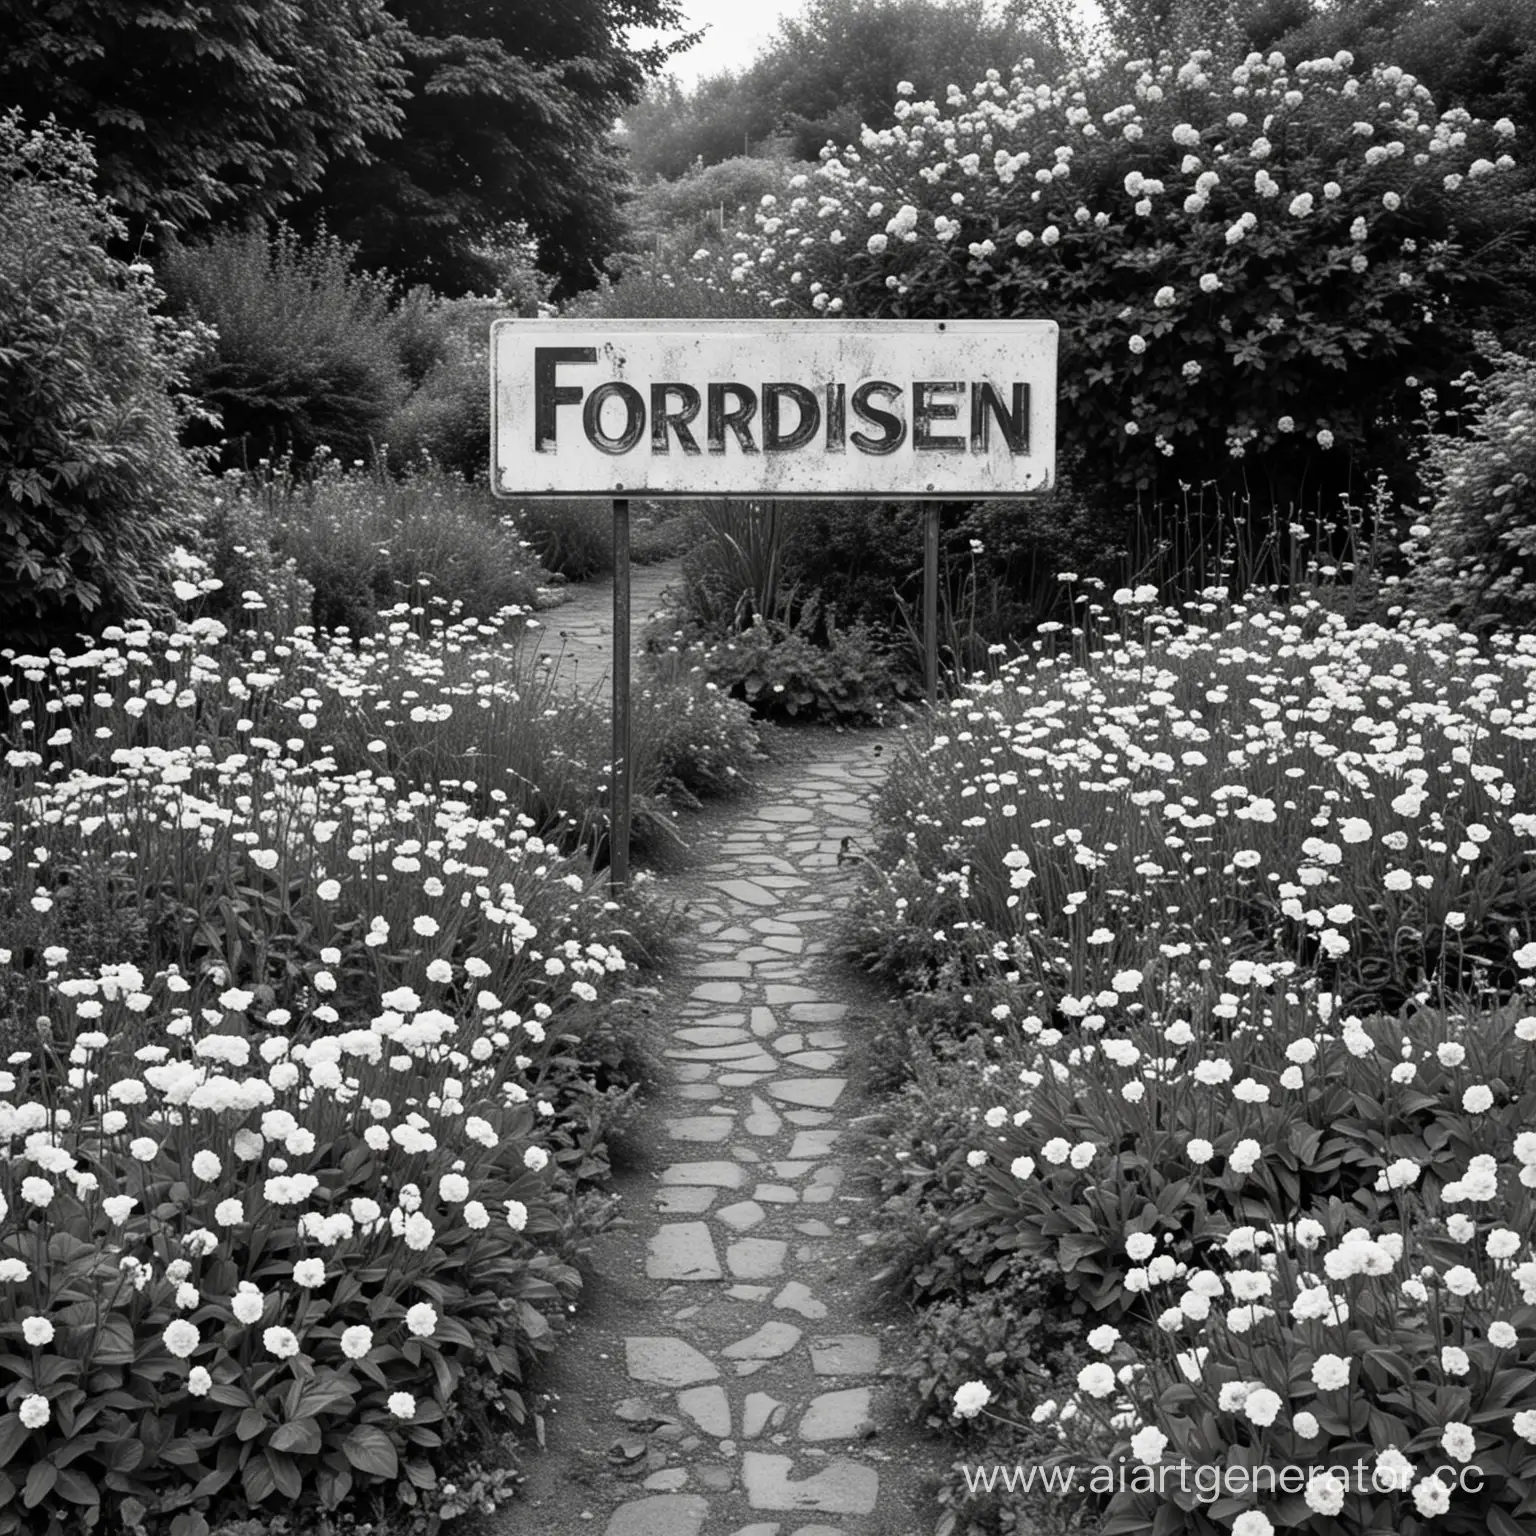 Forbidden-Garden-Monochrome-Blooms-Amidst-Restriction